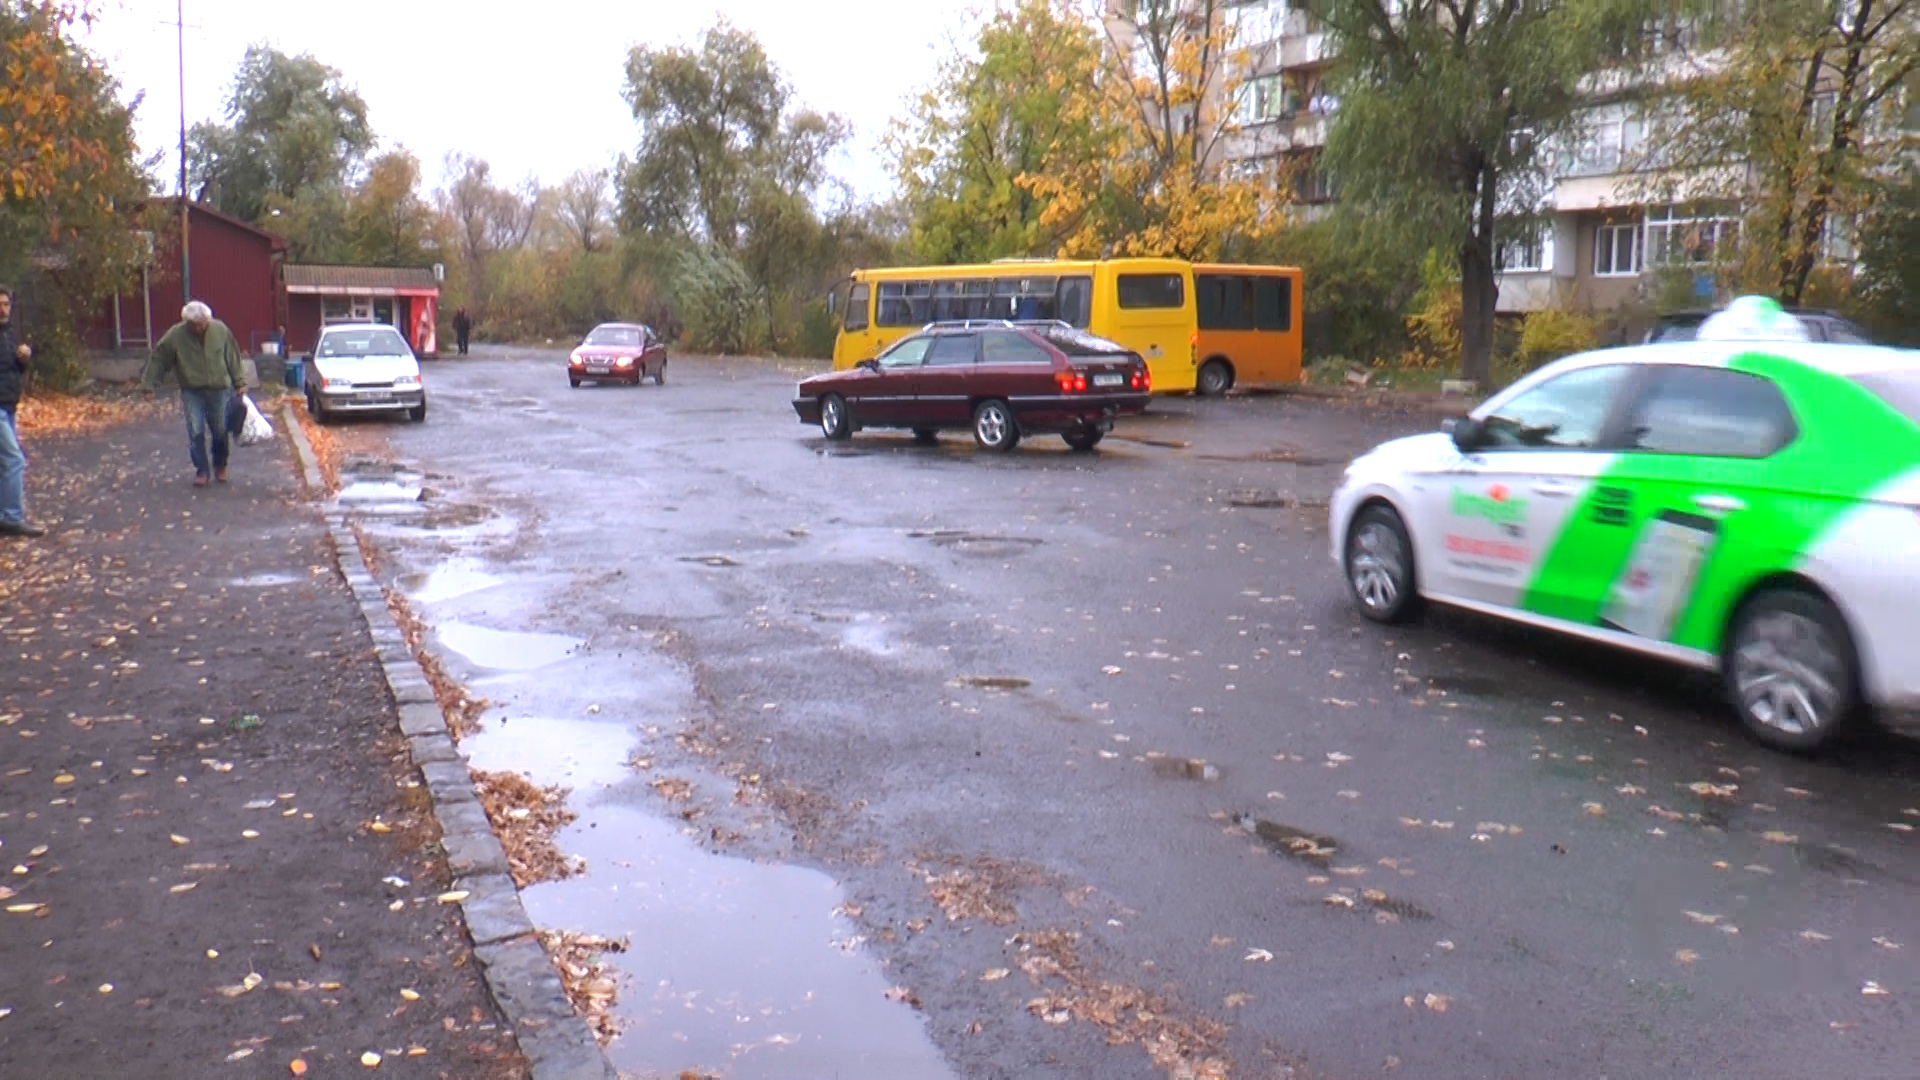 Знайти автобусні зупинки в одному з районів Ужгорода через відсутність їх ознак і досі складно (ВІДЕО)